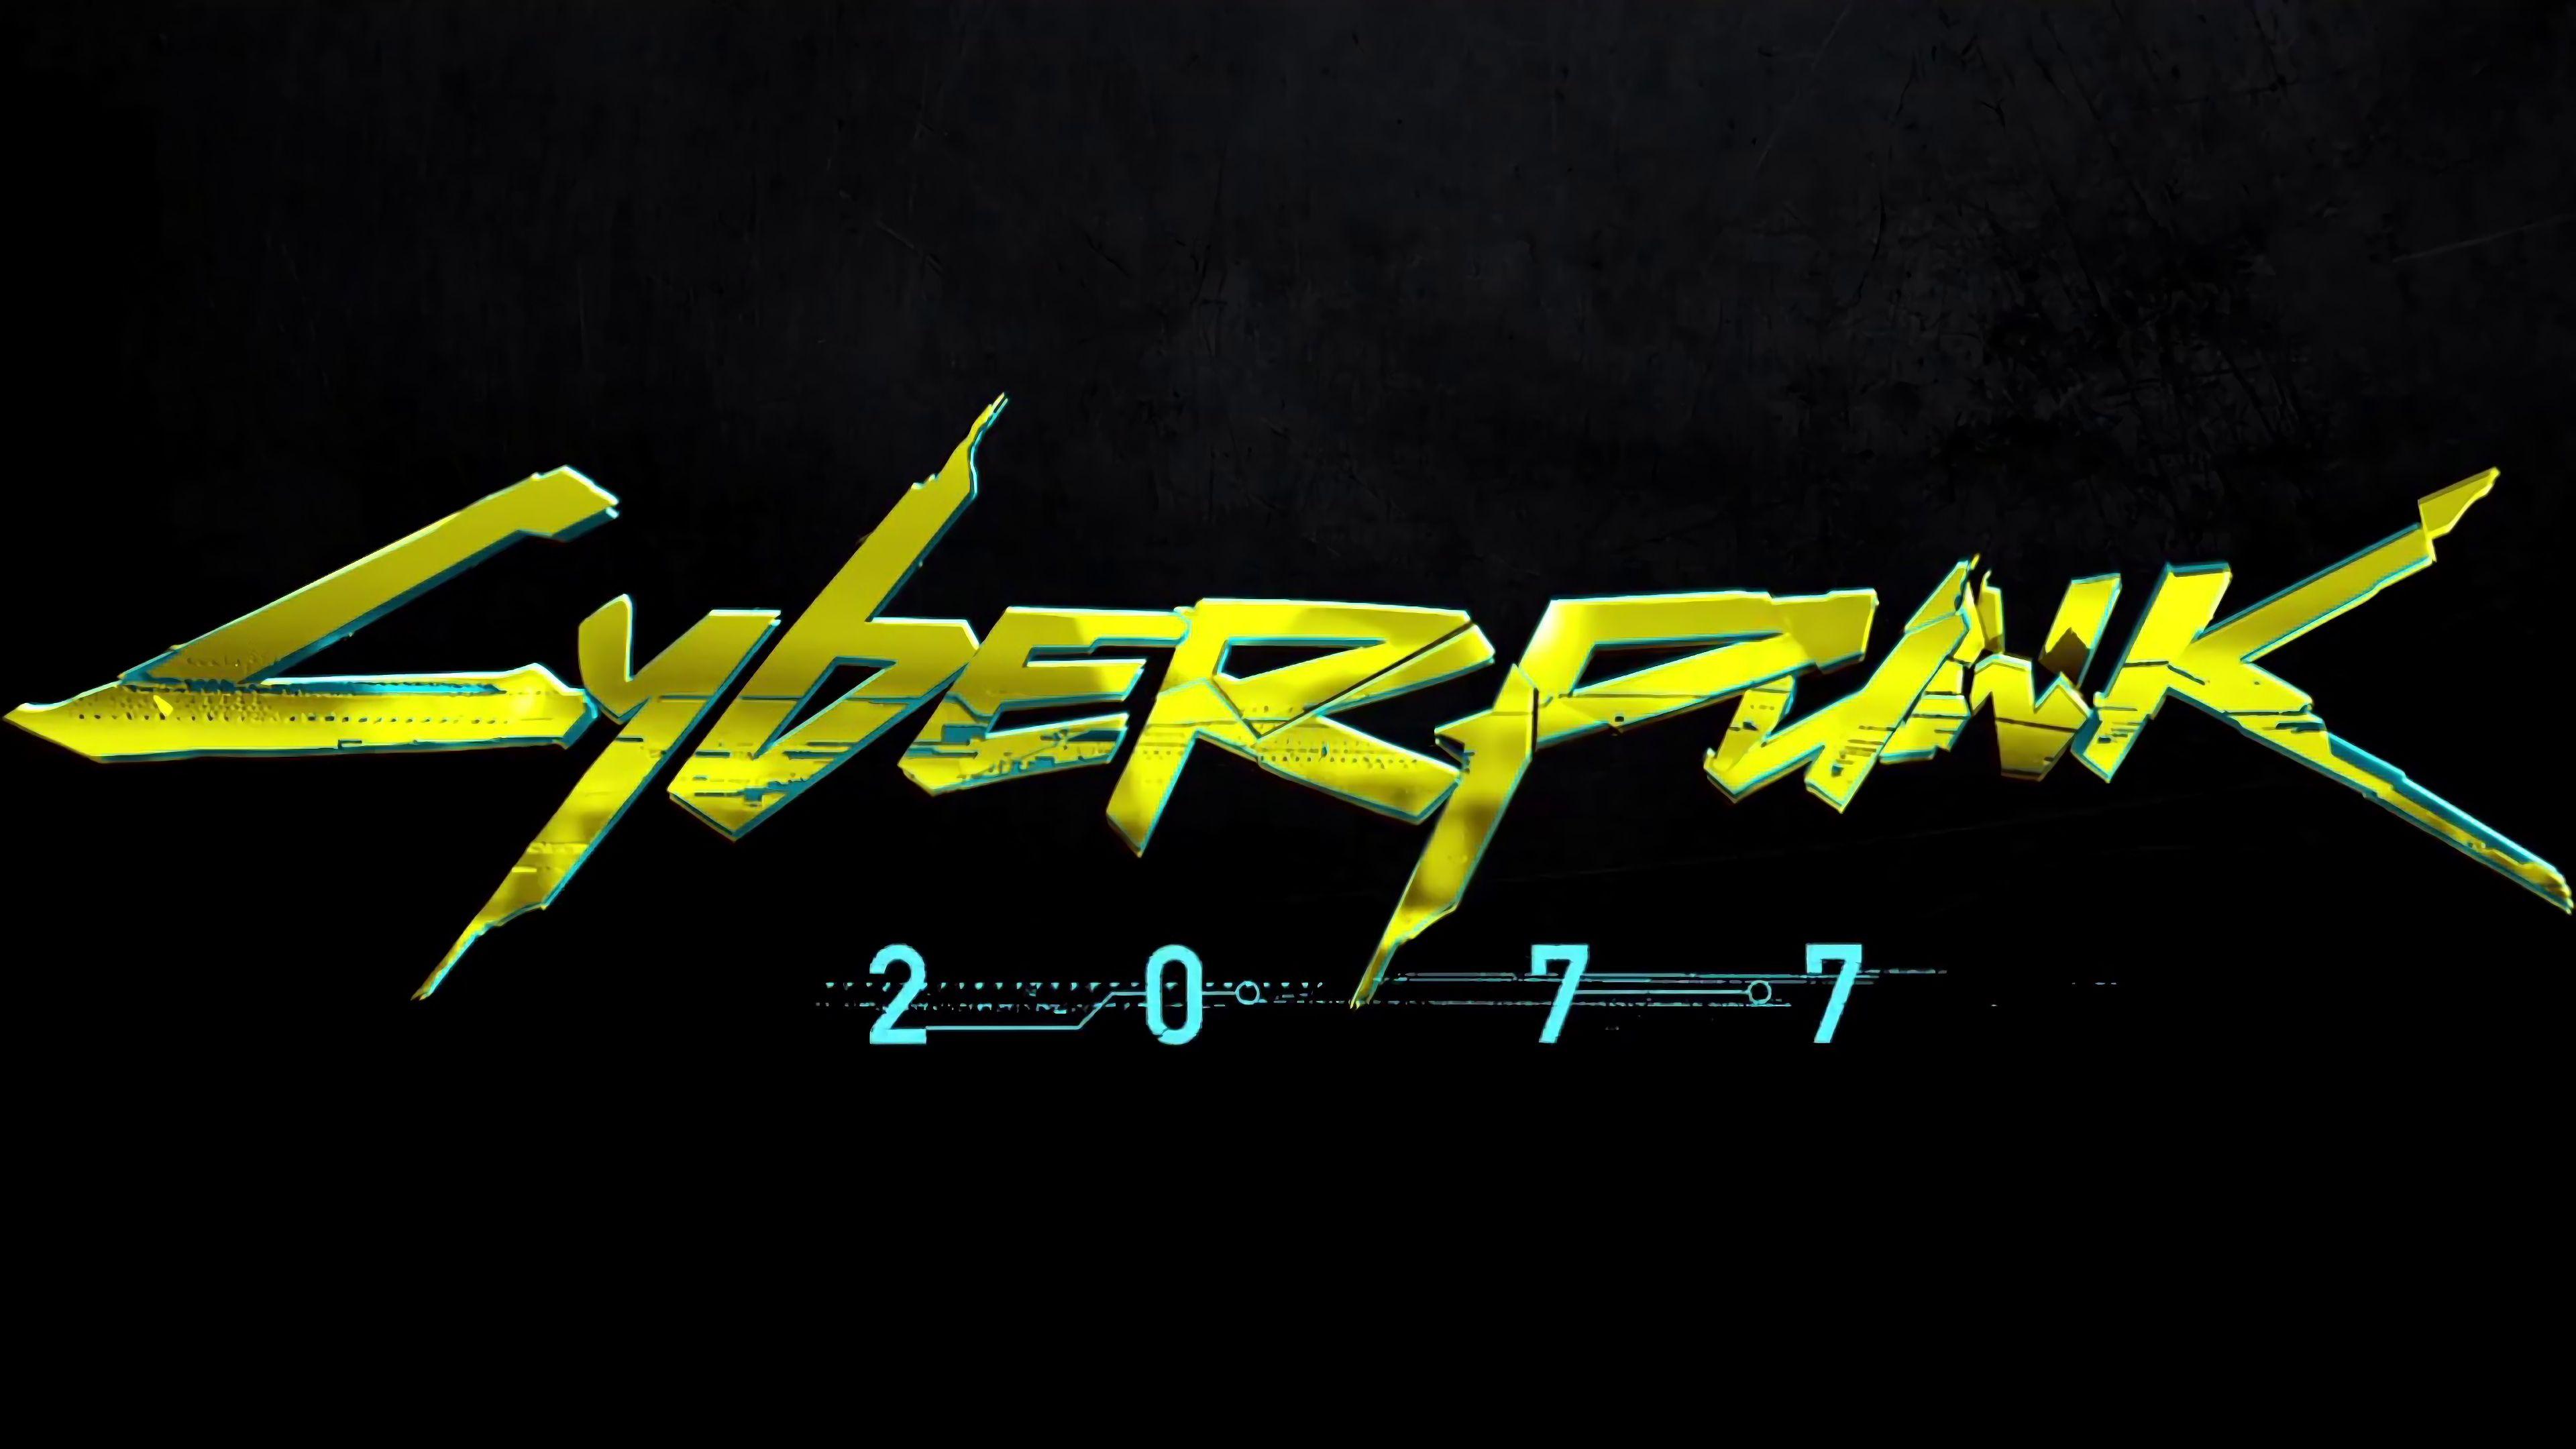 3840 x 2160 · jpeg - Cyberpunk 2077 Logo 4K #14744 | Cyberpunk, Cyberpunk 2077, Cyberpunk girl